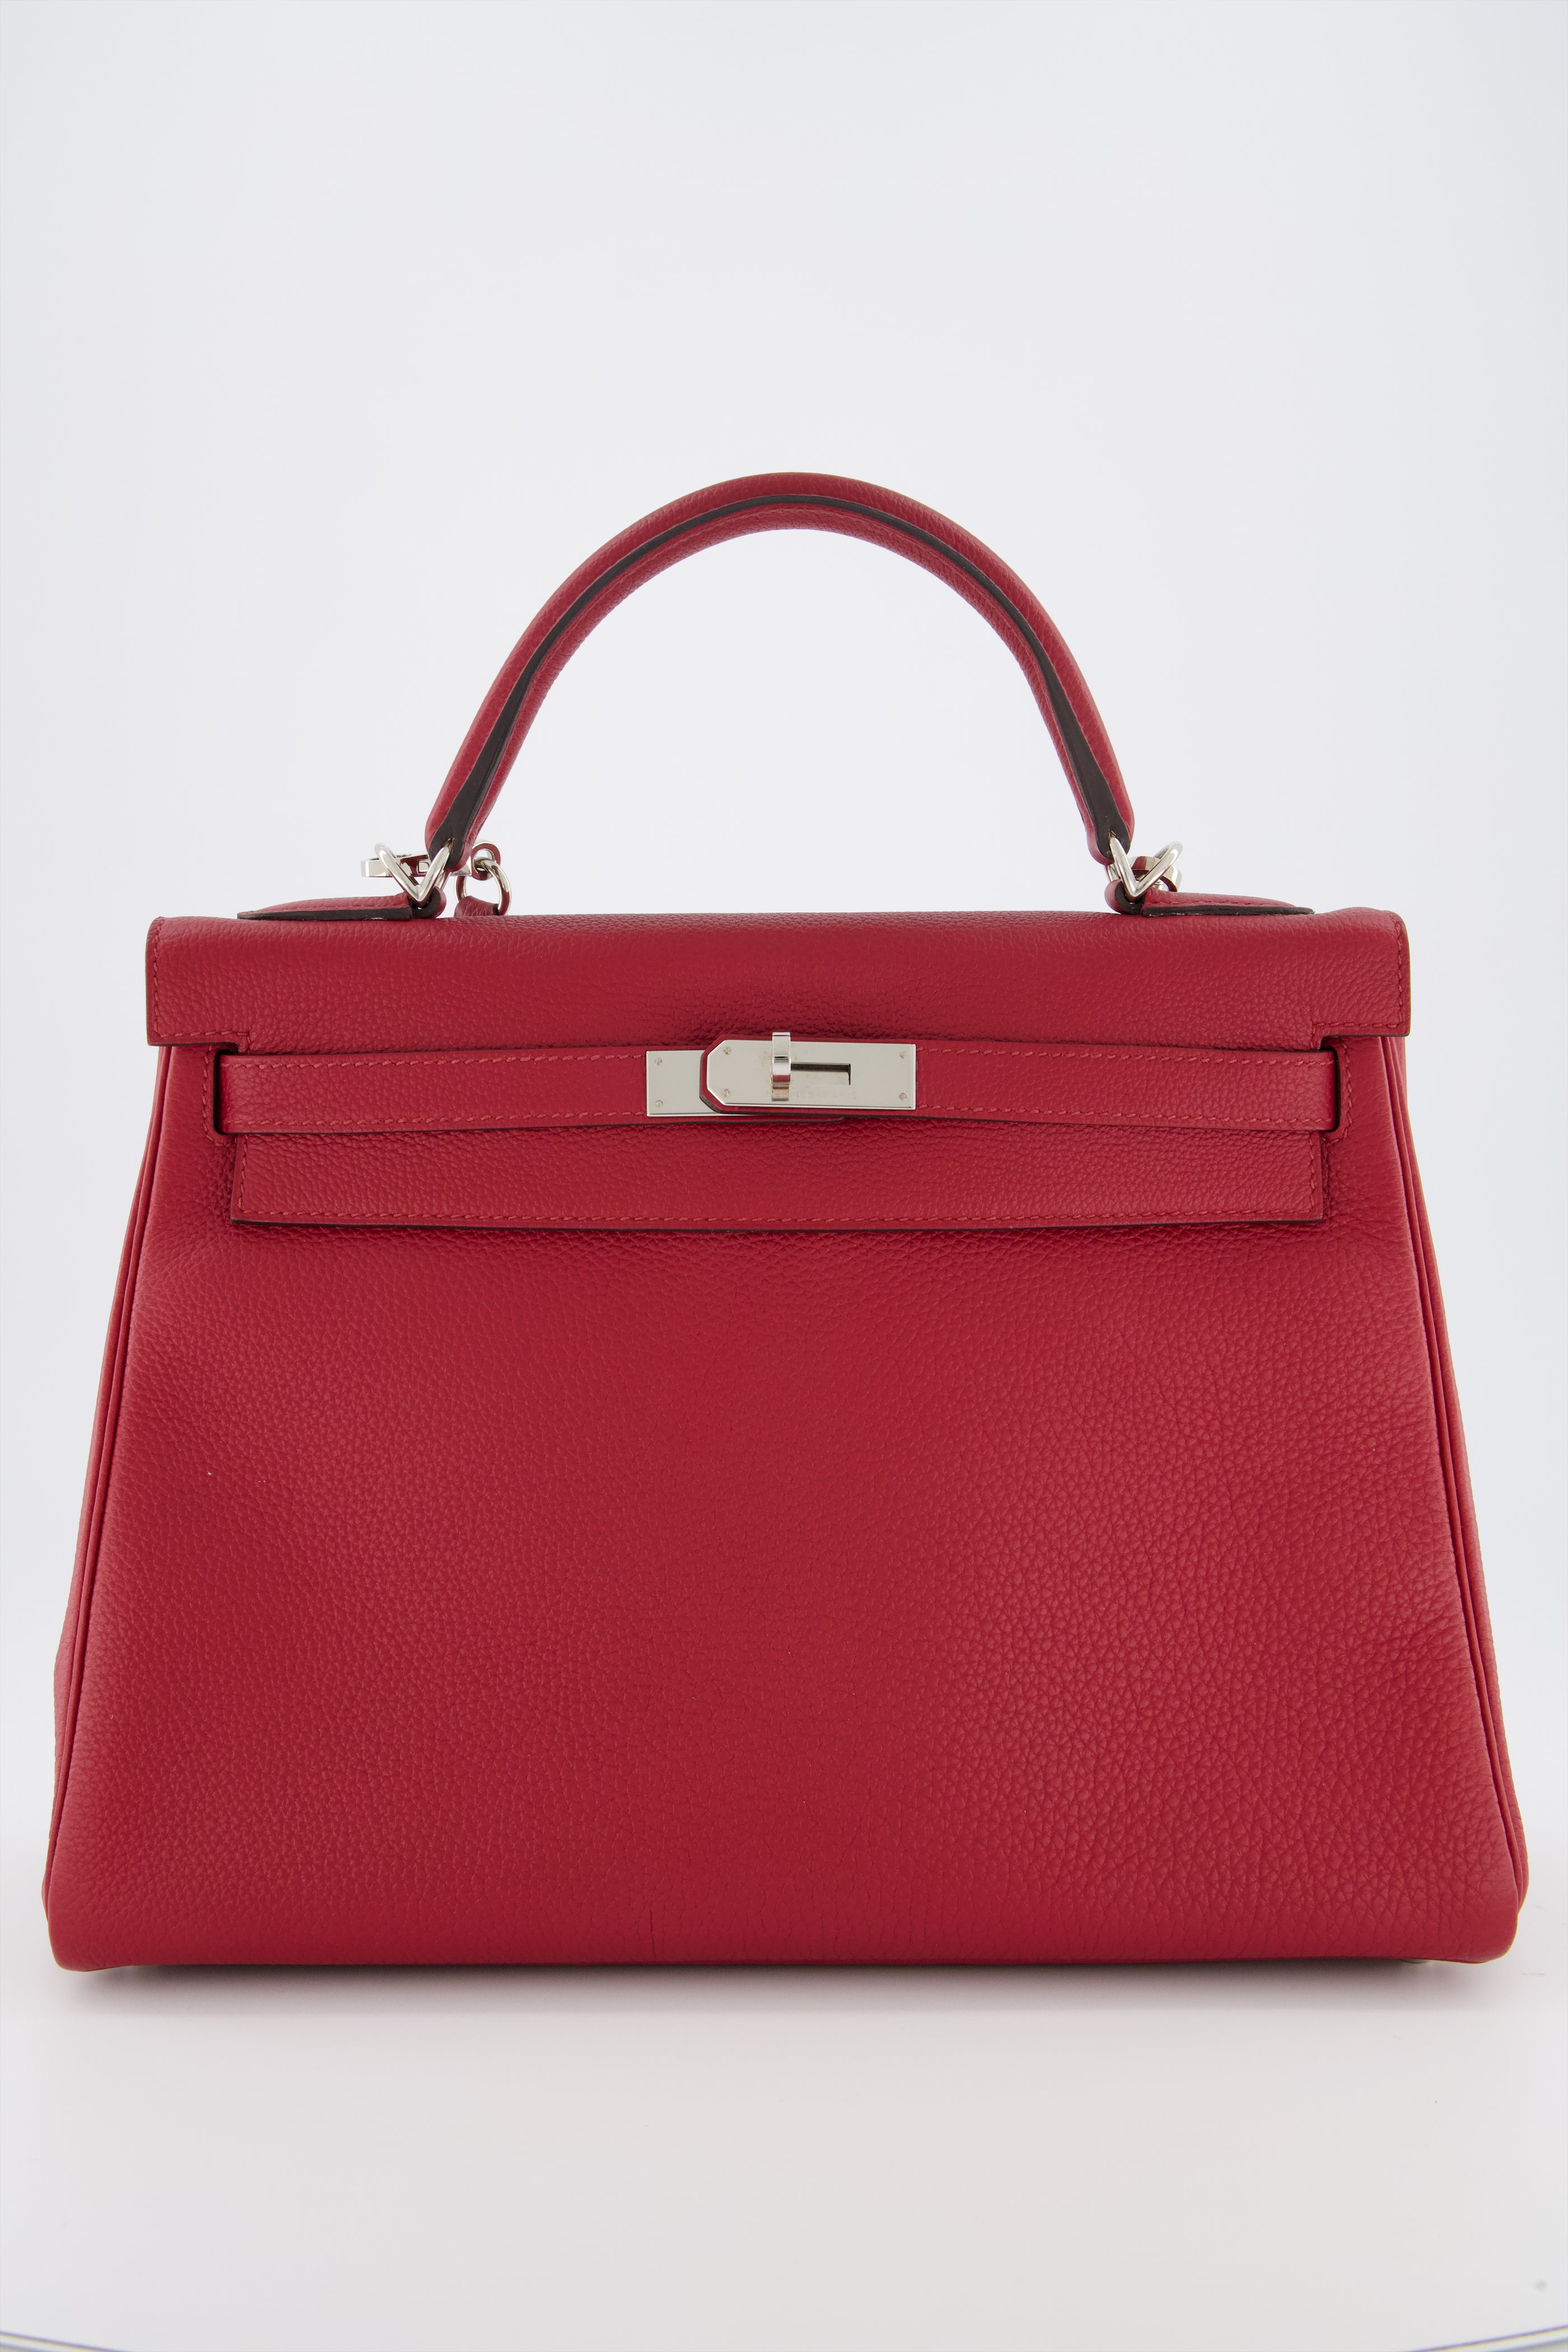 Hermes Kelly 32 Rouge Grenat Togo Leather Handbag With Palladium Hardware.